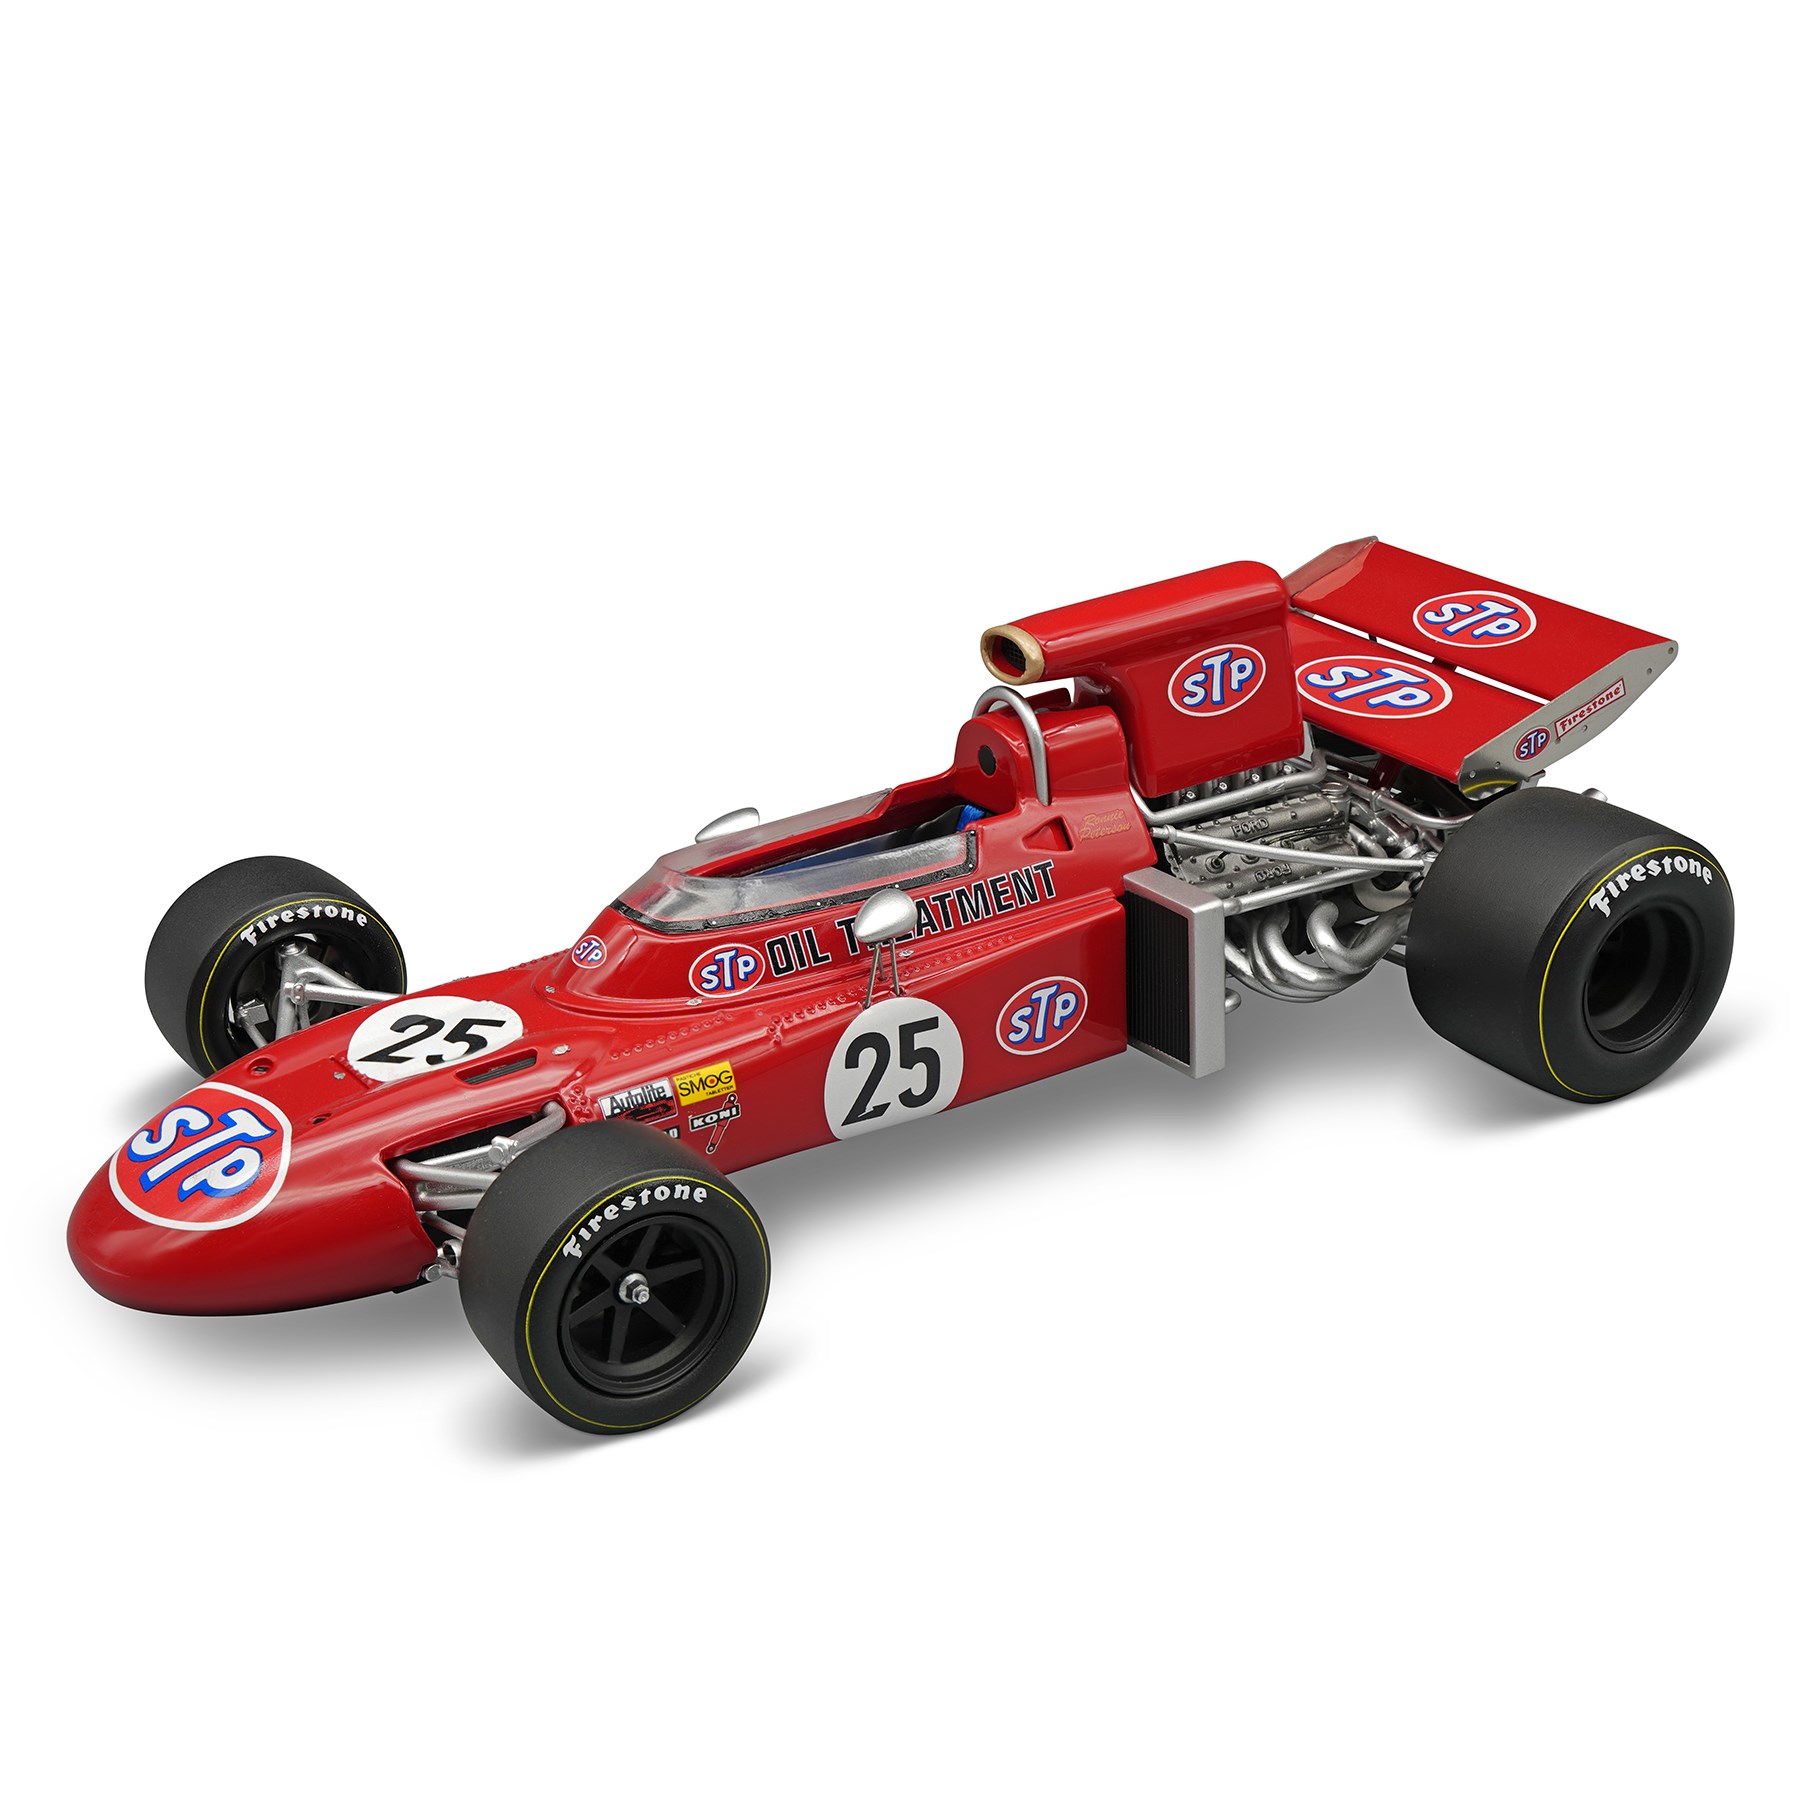 Tecnomodel March 711 - 1971 Italian Grand Prix - #25 R. Peterson 1:18